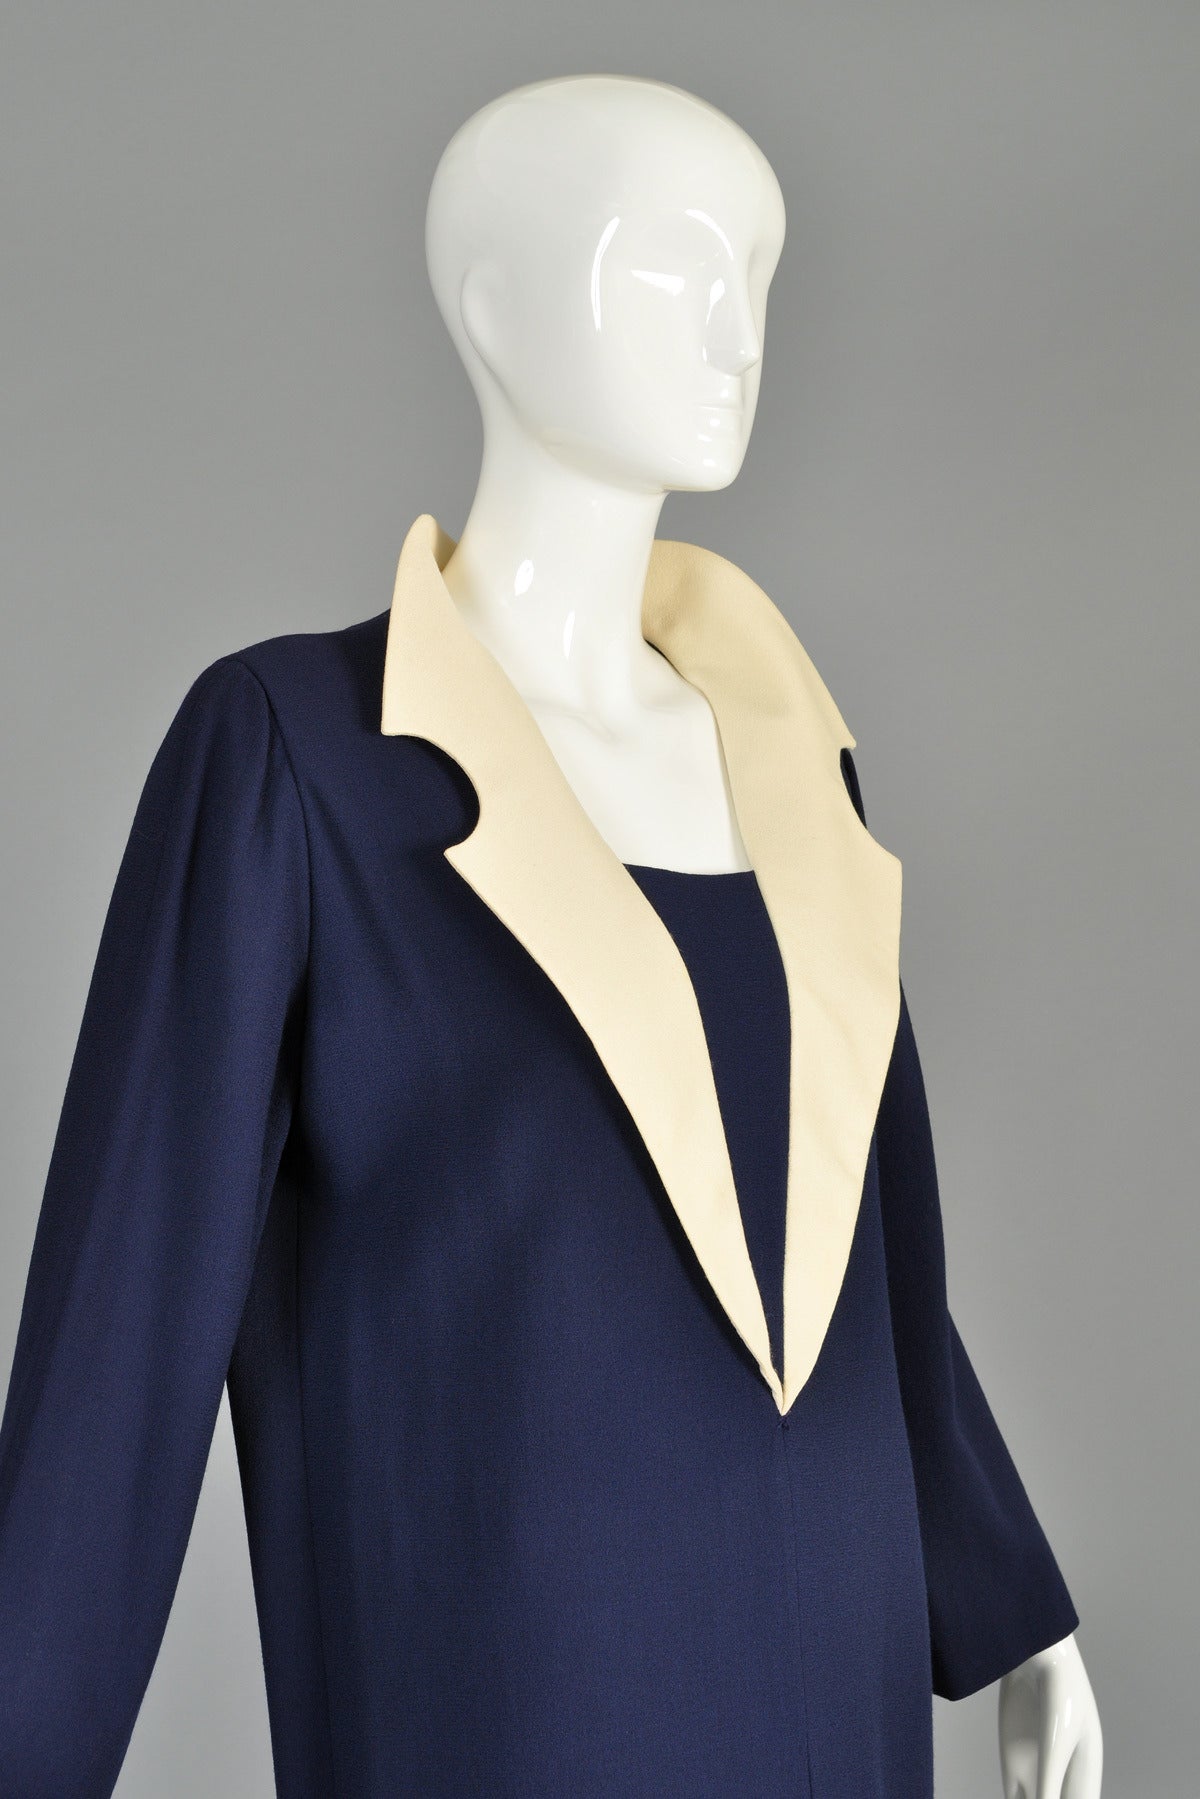 c. 1992 Pierre Cardin Haute Couture Skirt plus Tunic Shift Dress For Sale 3